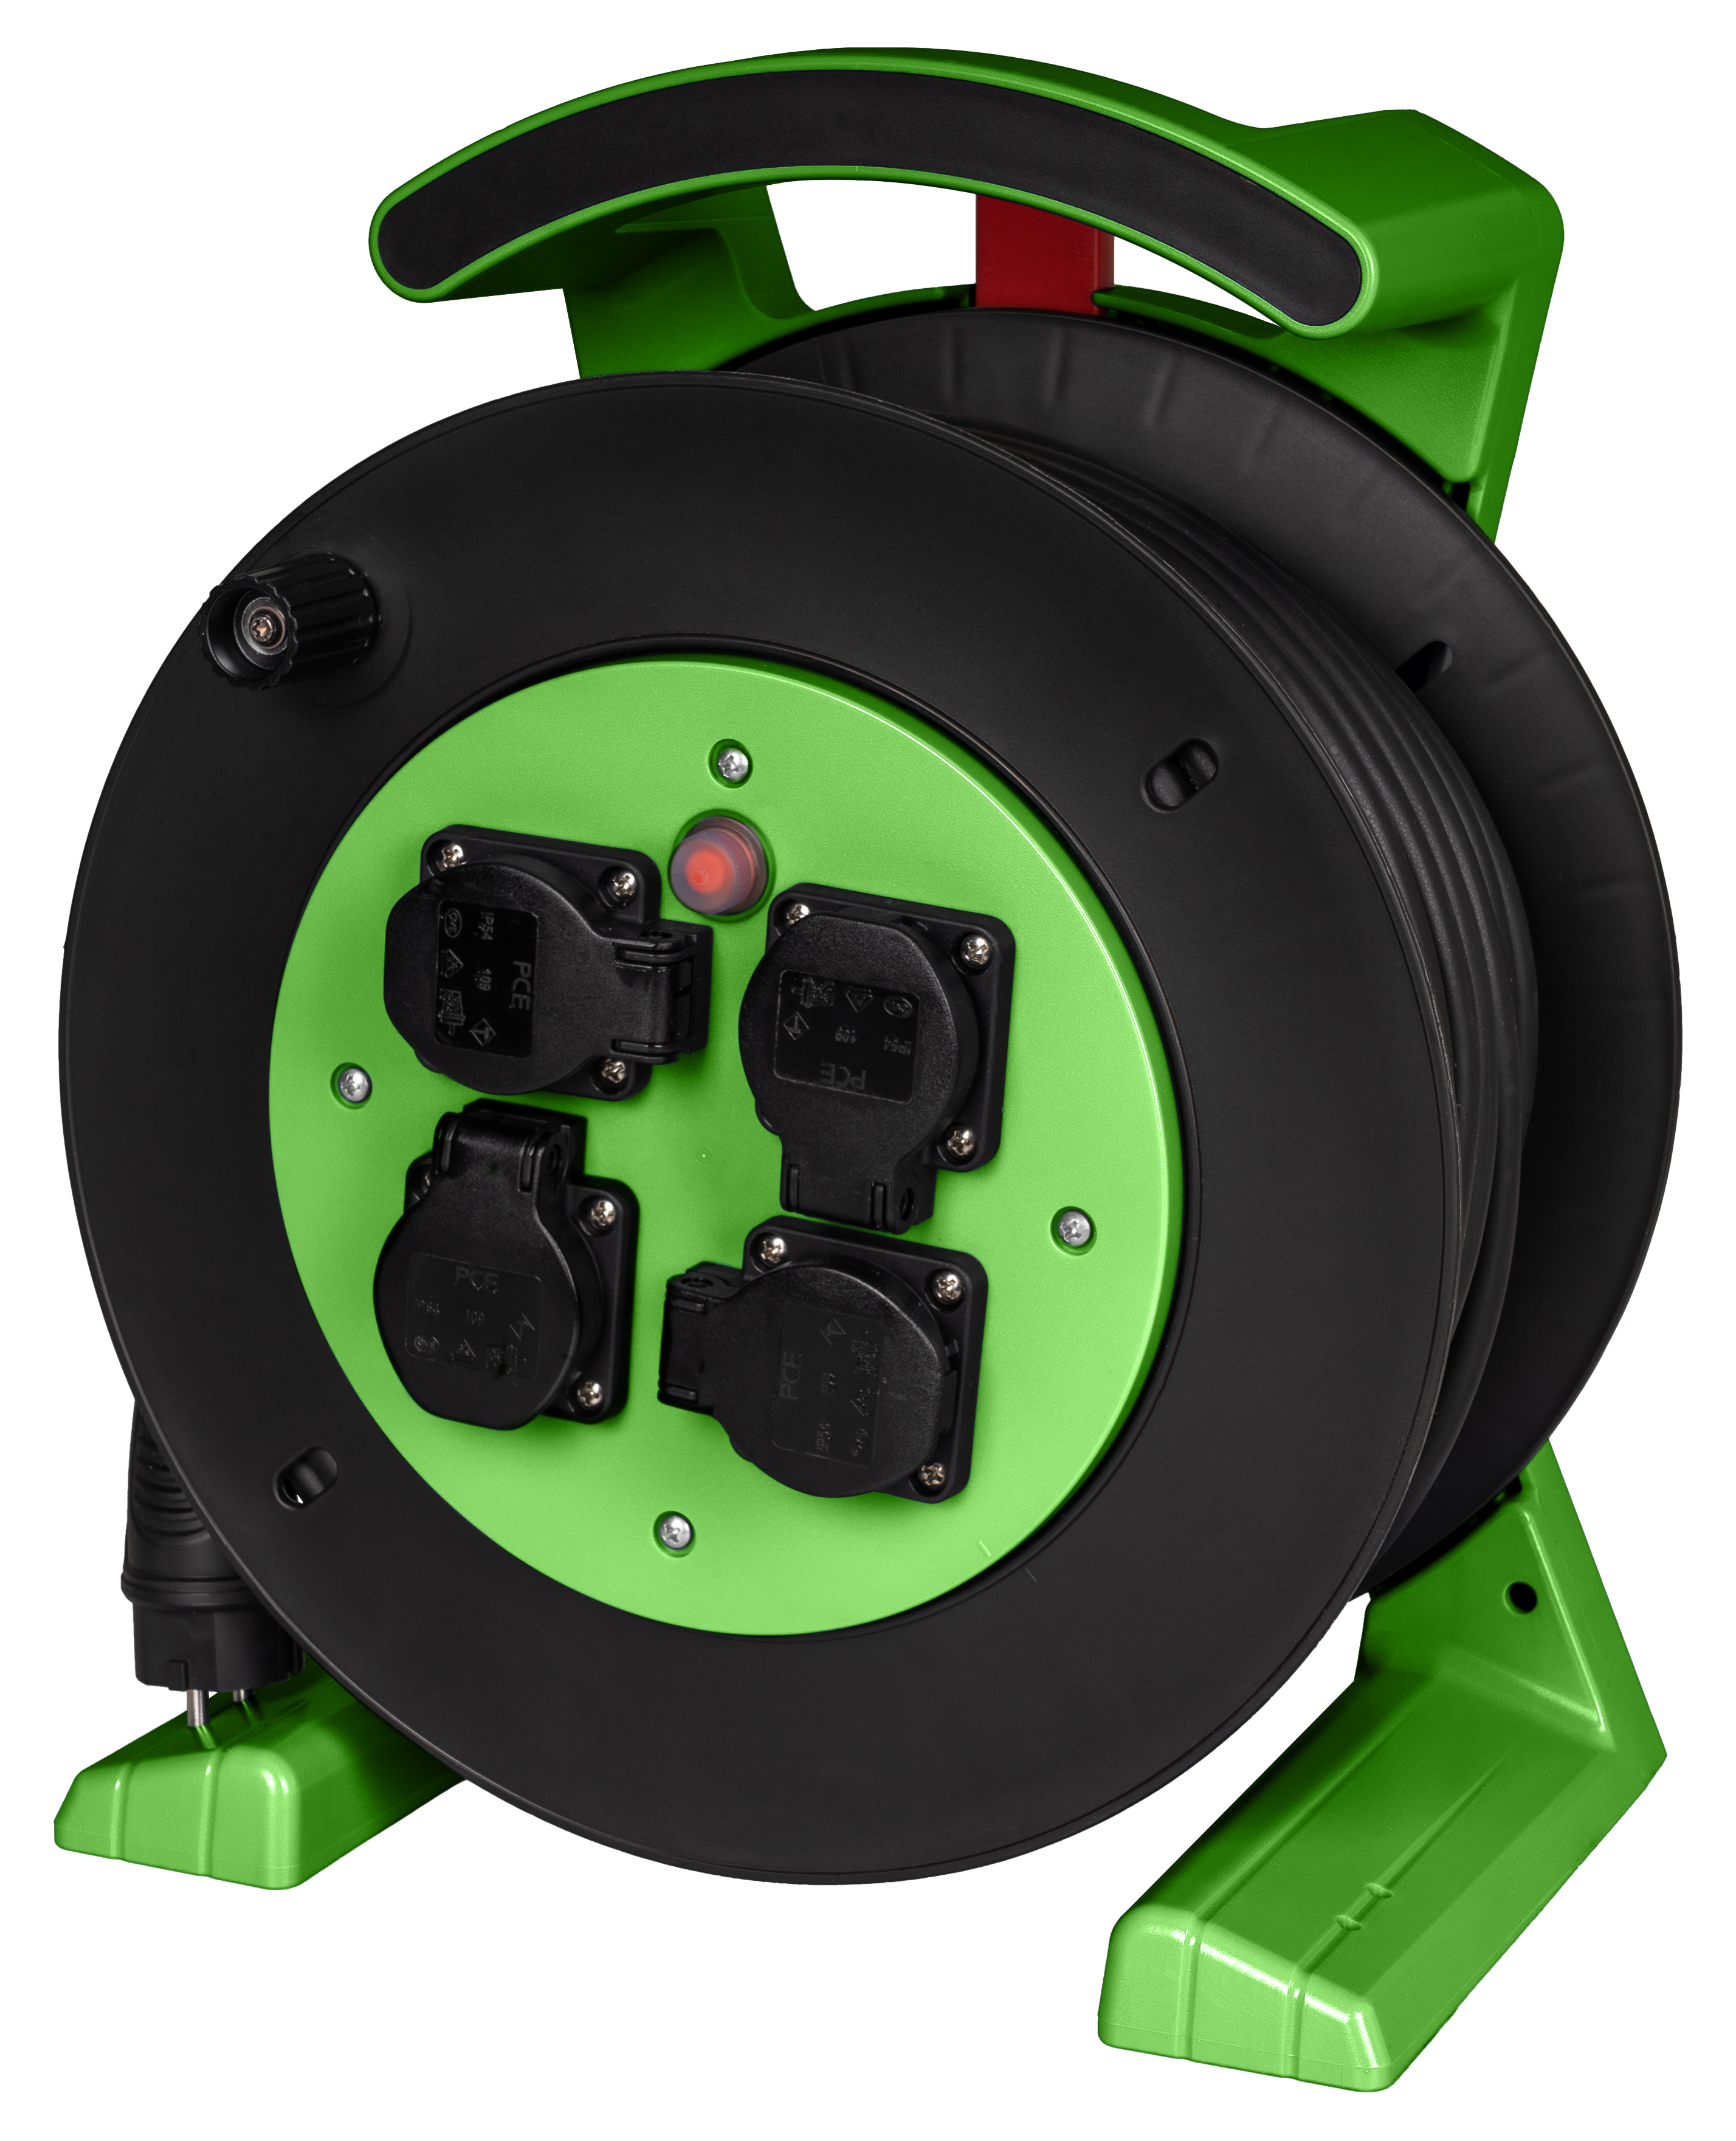 Kabeltrommel grün-schwarz, 4 x Schutzkontakt-Steckdose, H07RN-F 3 G 2,5 mm², 40 m JUMBO L 2.0